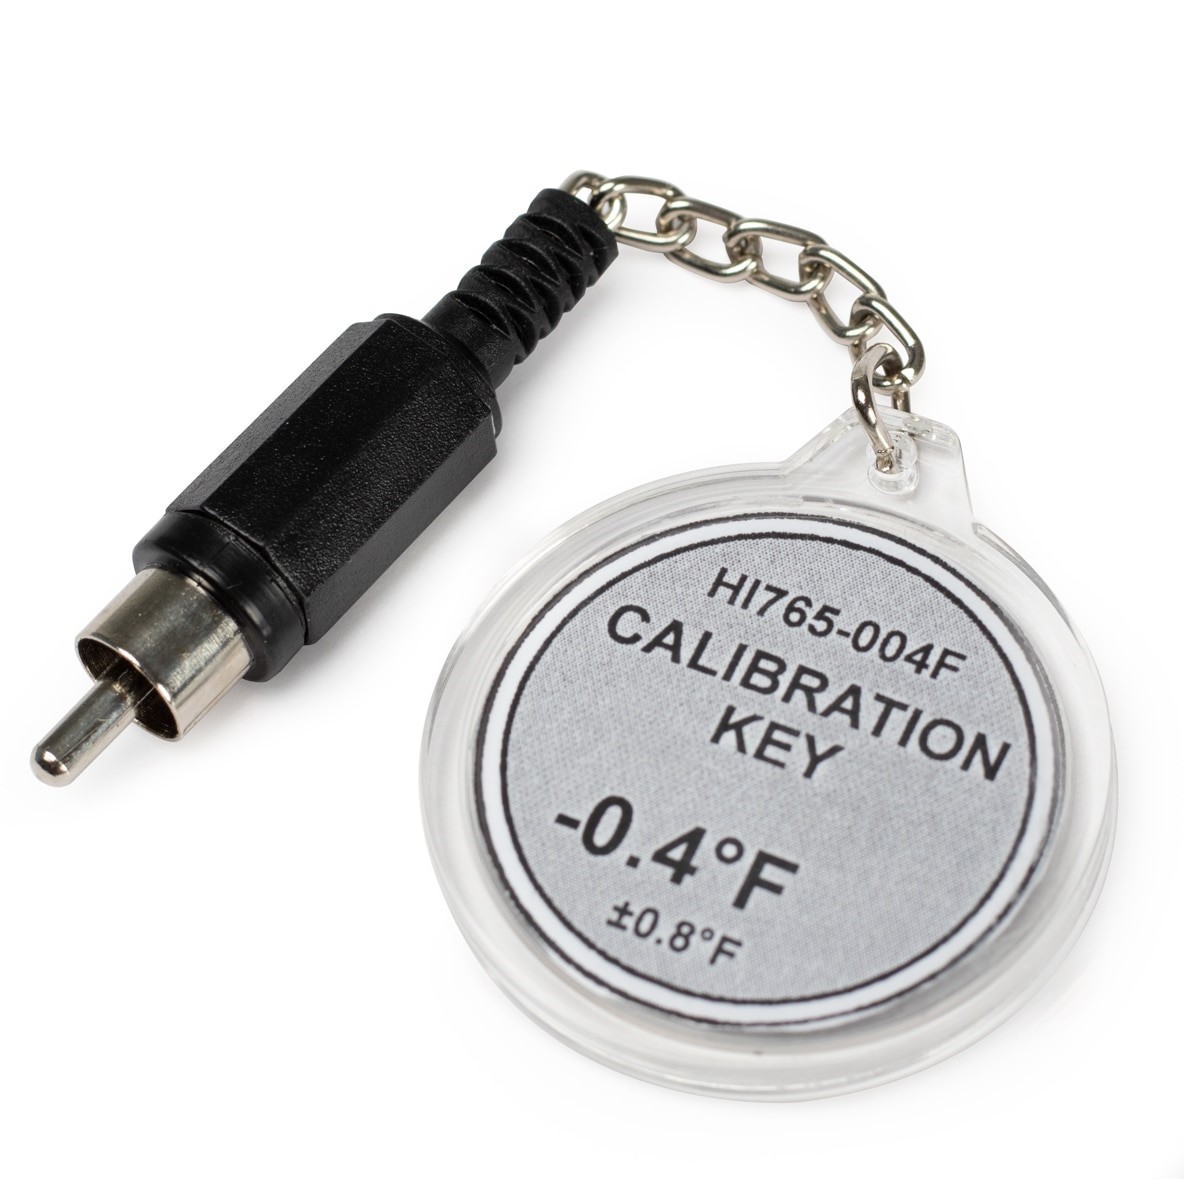 HI765-004F Calibration Check Key at -0.4°F (HI765 Probes)